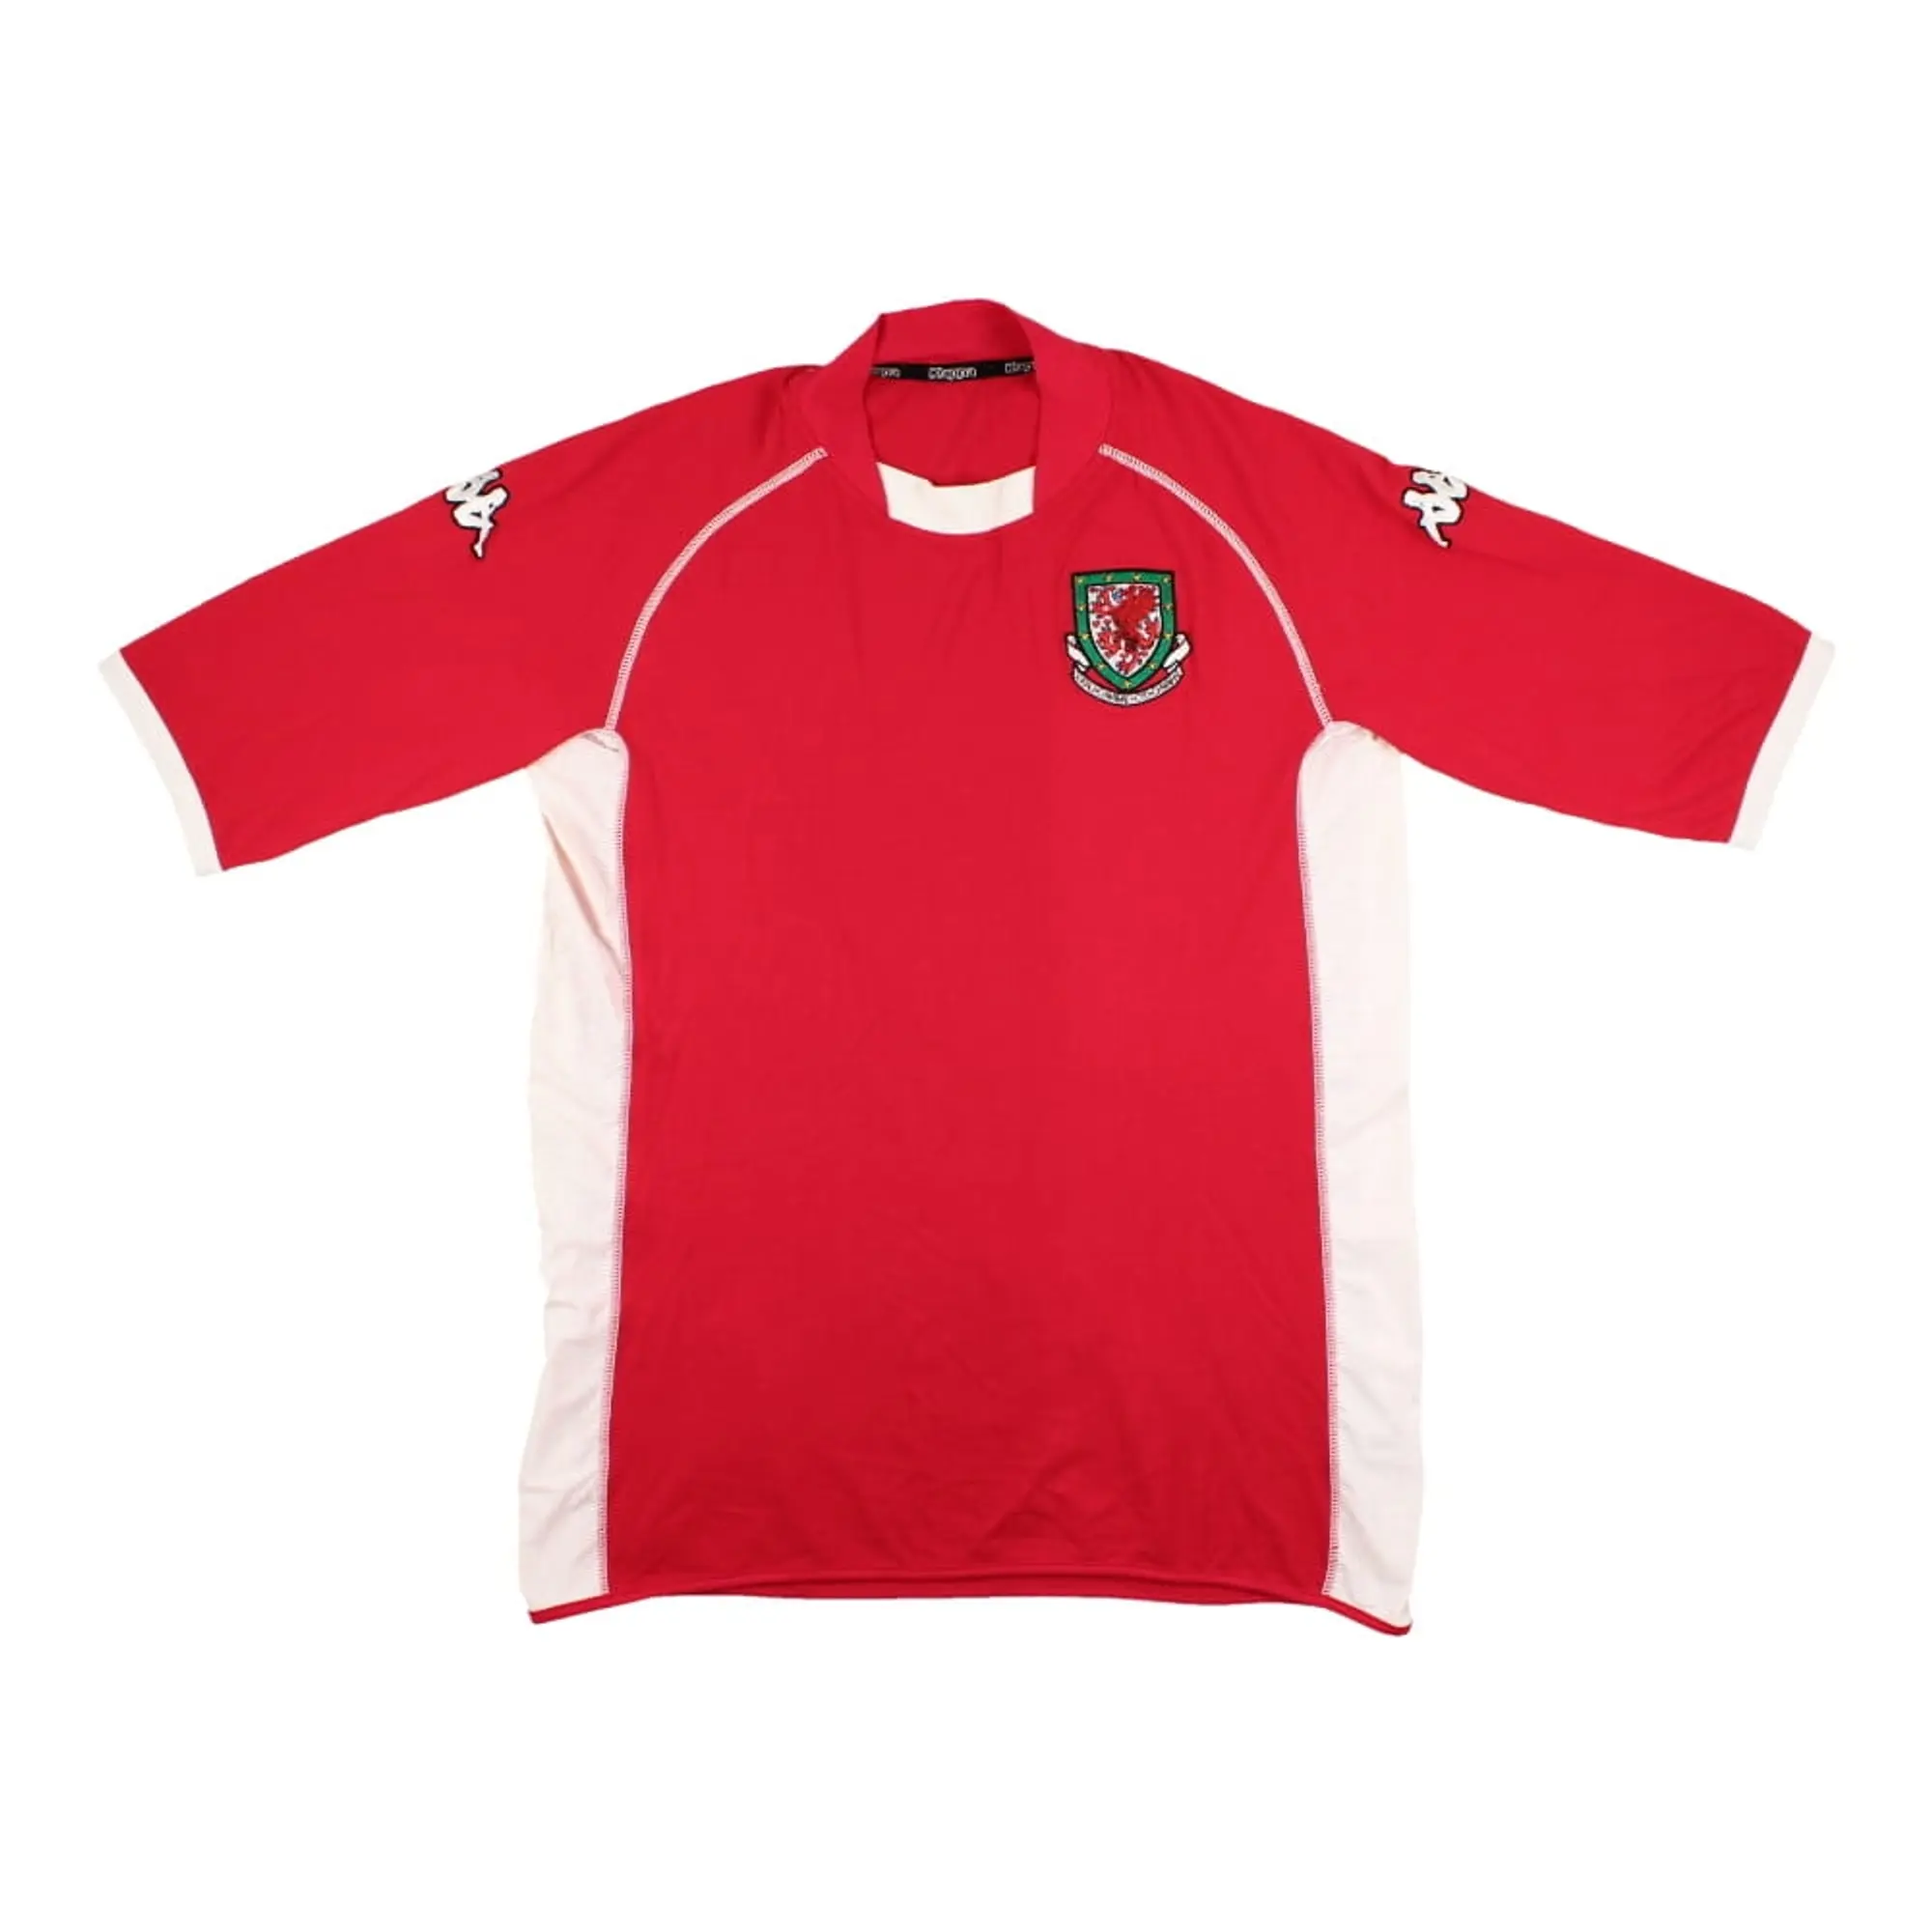 Kappa Wales Mens SS Home Shirt 2002